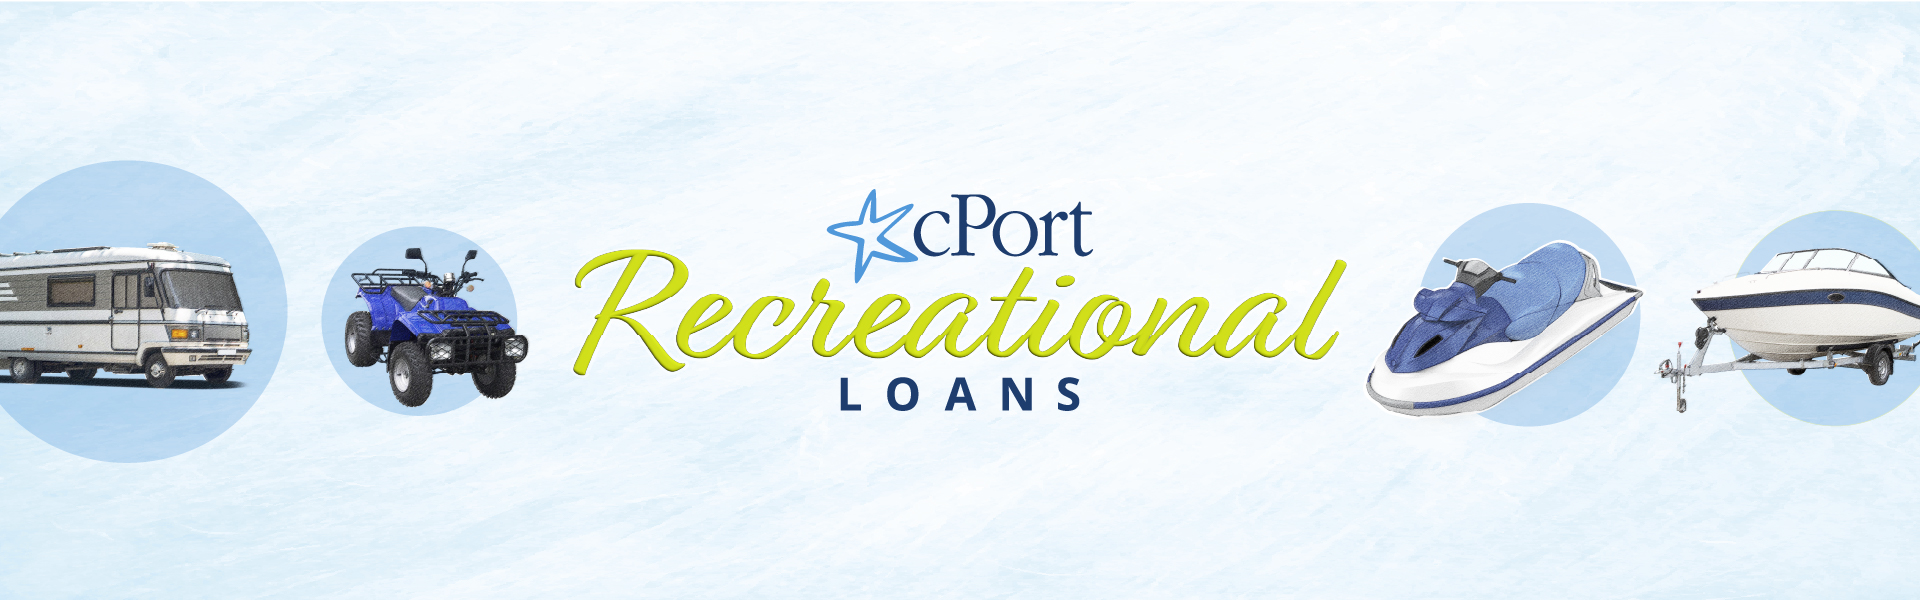 Recreational Loan